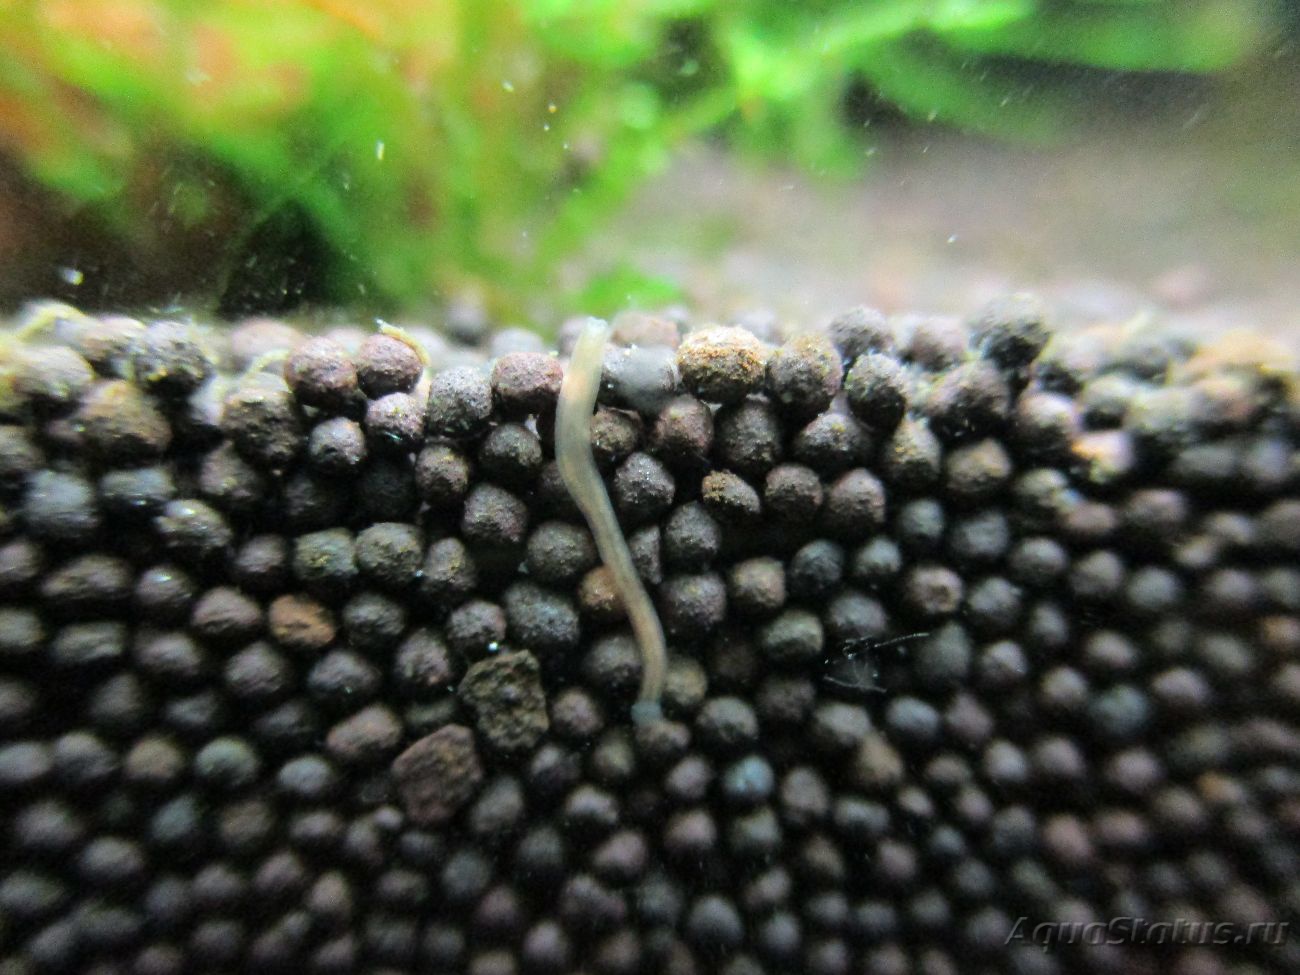 Белые маленькие черви на стенках аквариума